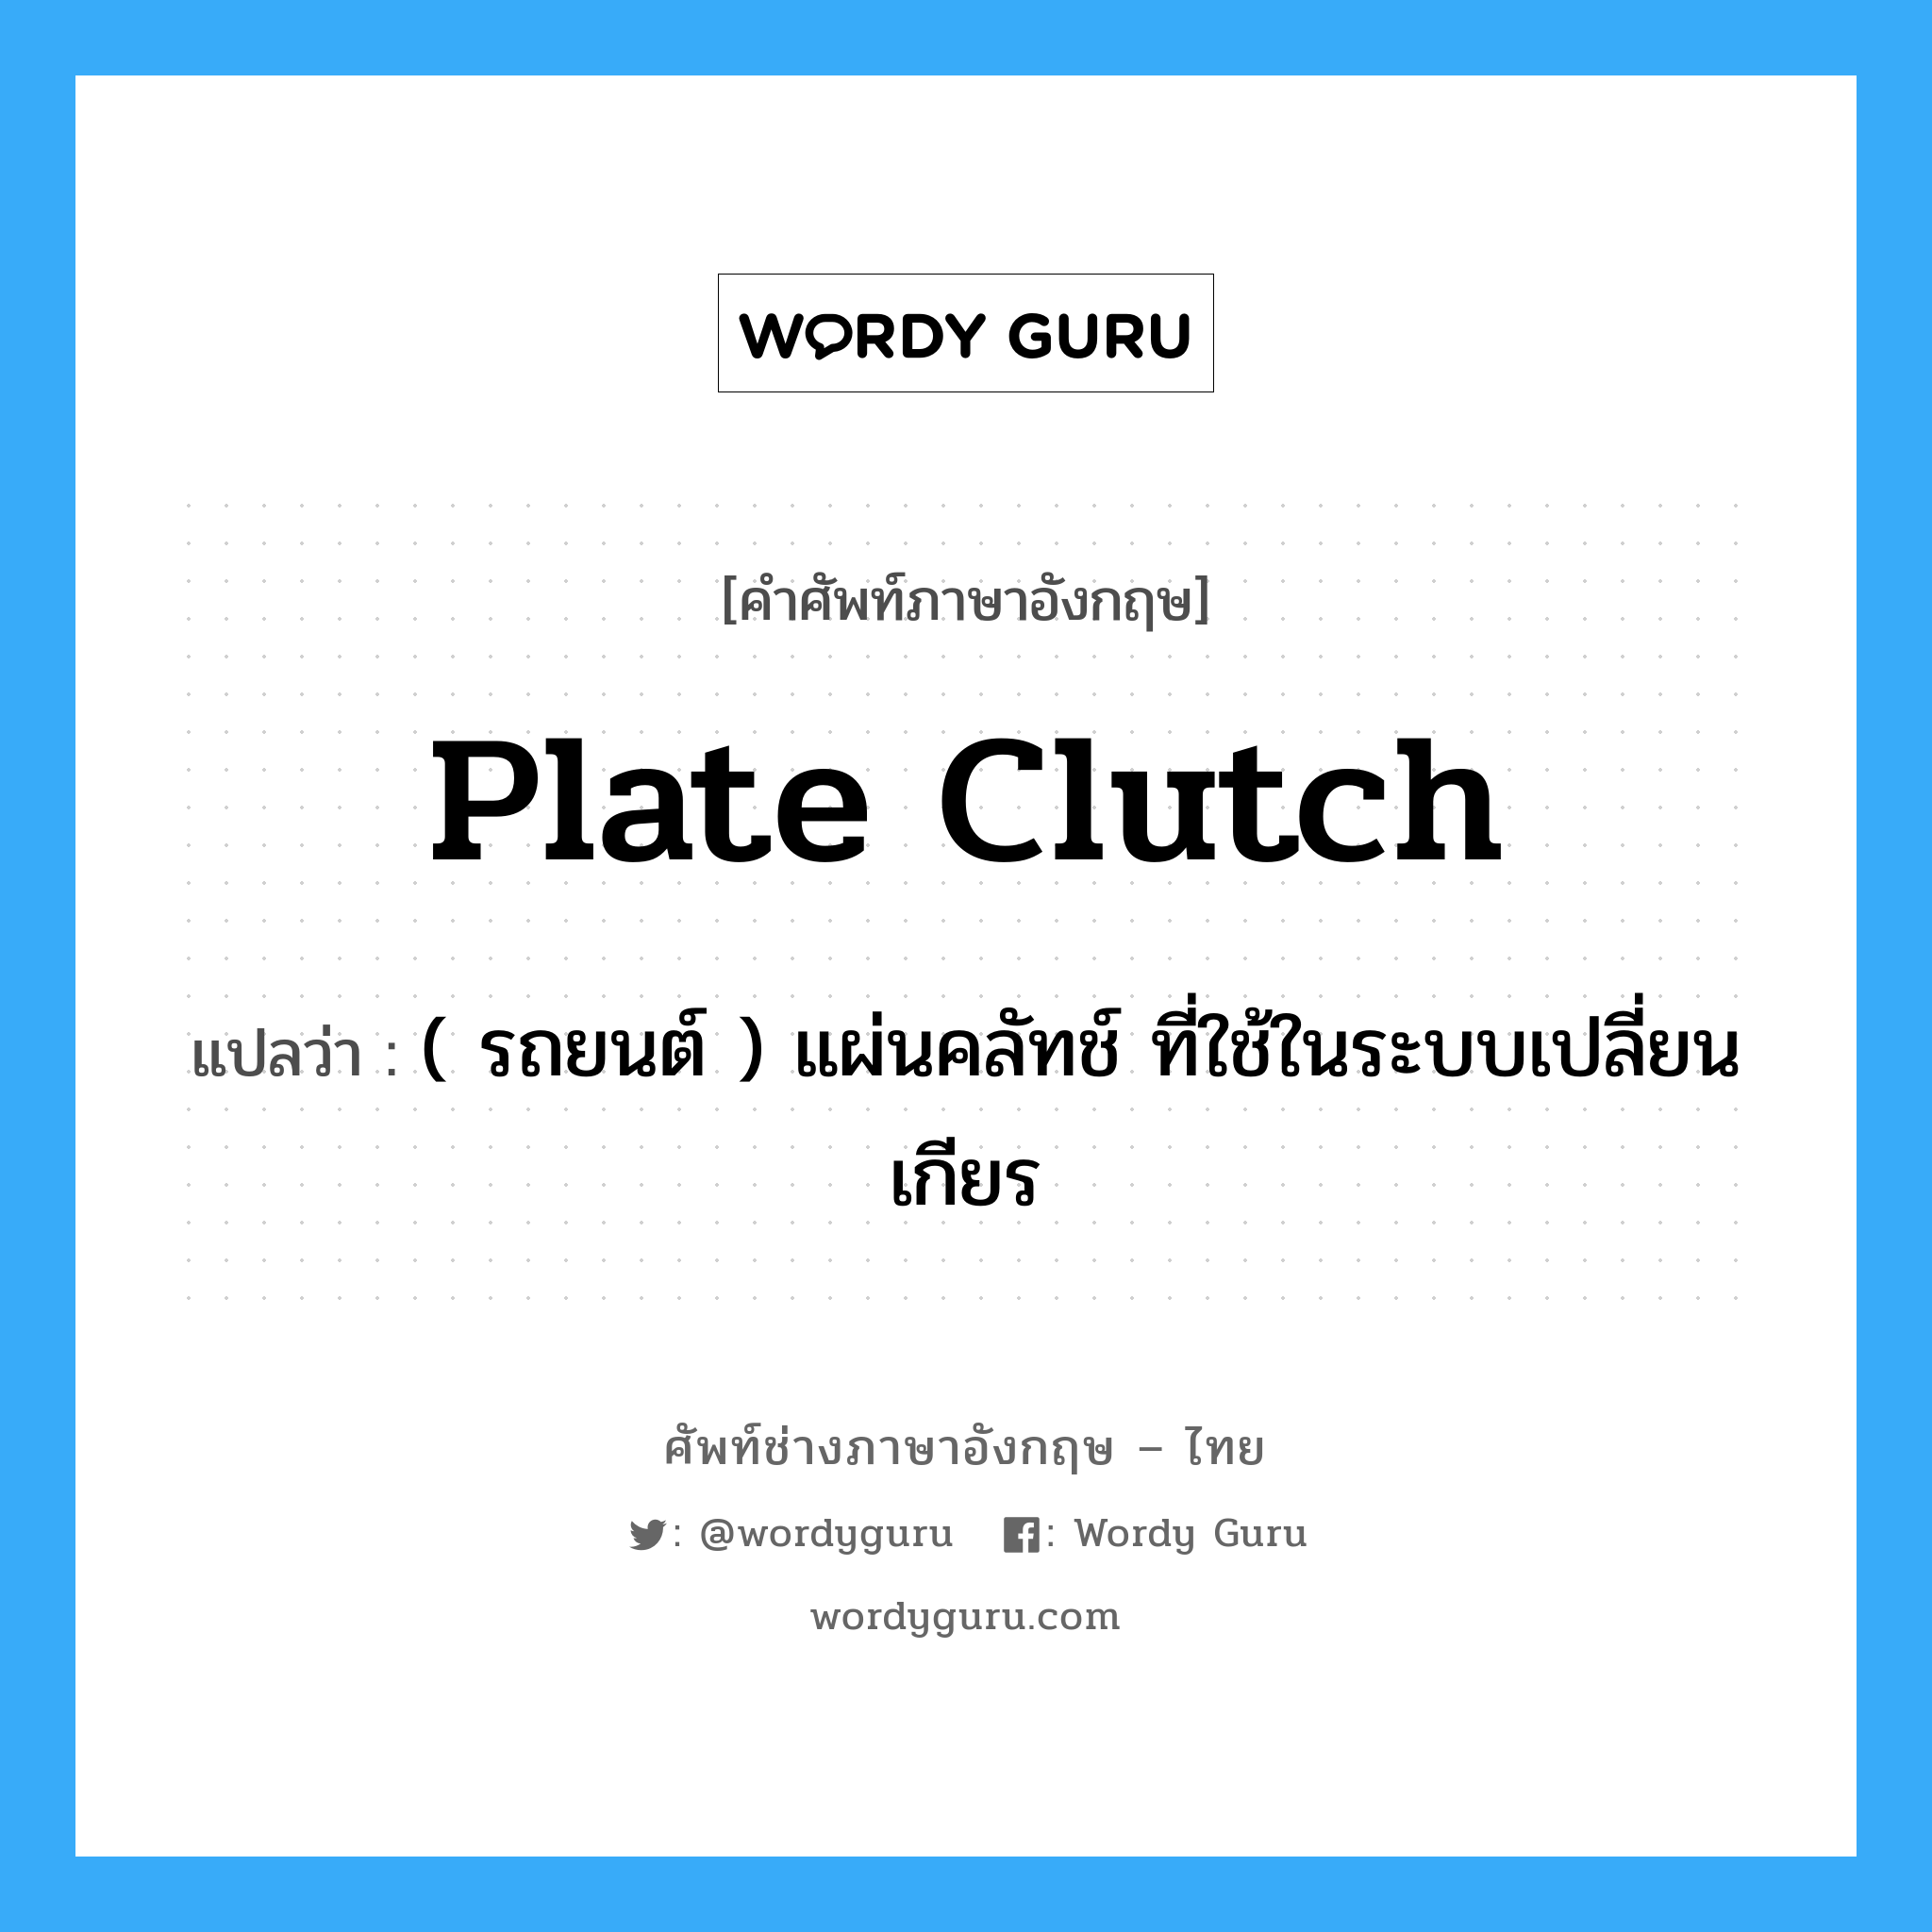 plate clutch แปลว่า?, คำศัพท์ช่างภาษาอังกฤษ - ไทย plate clutch คำศัพท์ภาษาอังกฤษ plate clutch แปลว่า ( รถยนต์ ) แผ่นคลัทช์ ที่ใช้ในระบบเปลี่ยนเกียร